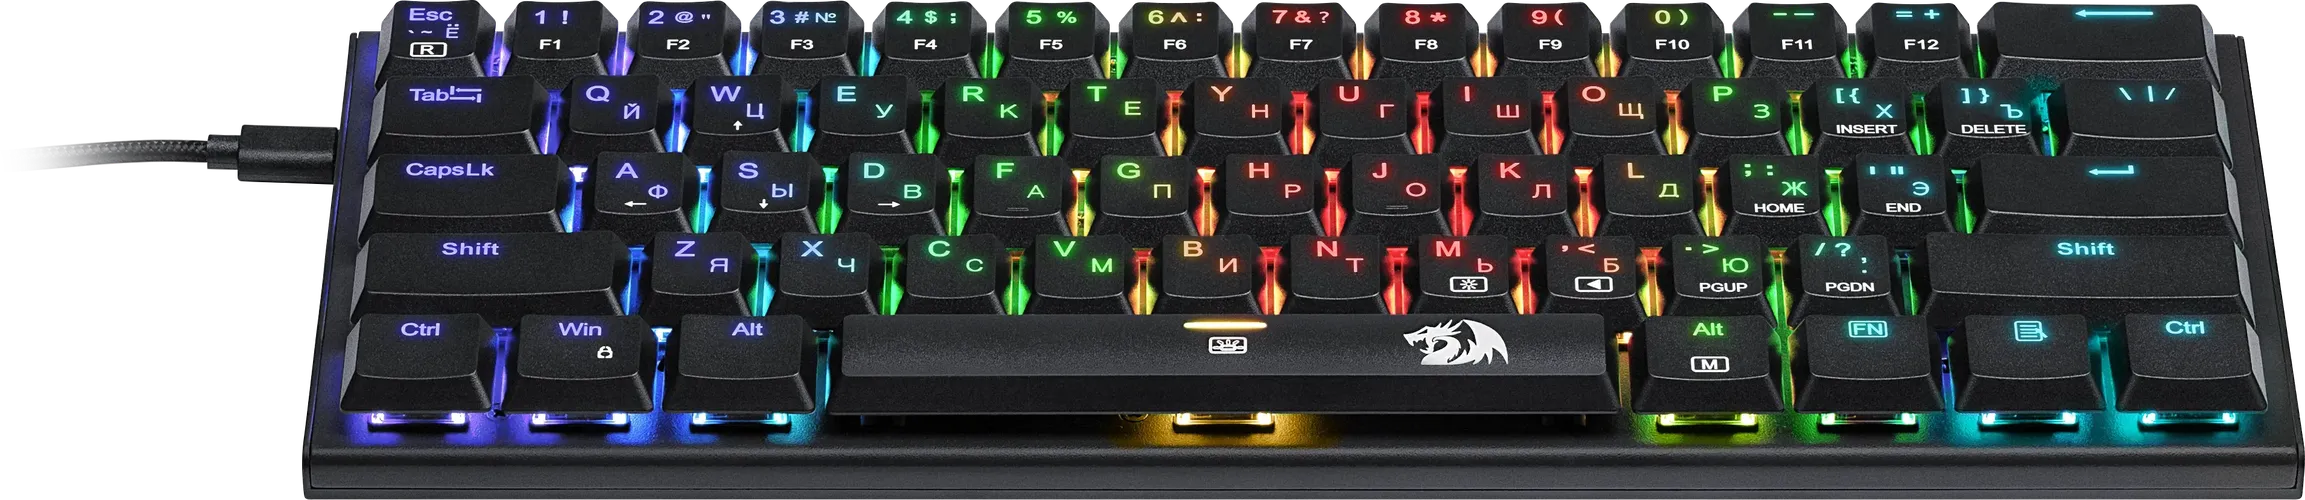 Игровая клавиатура Redragon ANIVIA, Черный, купить недорого